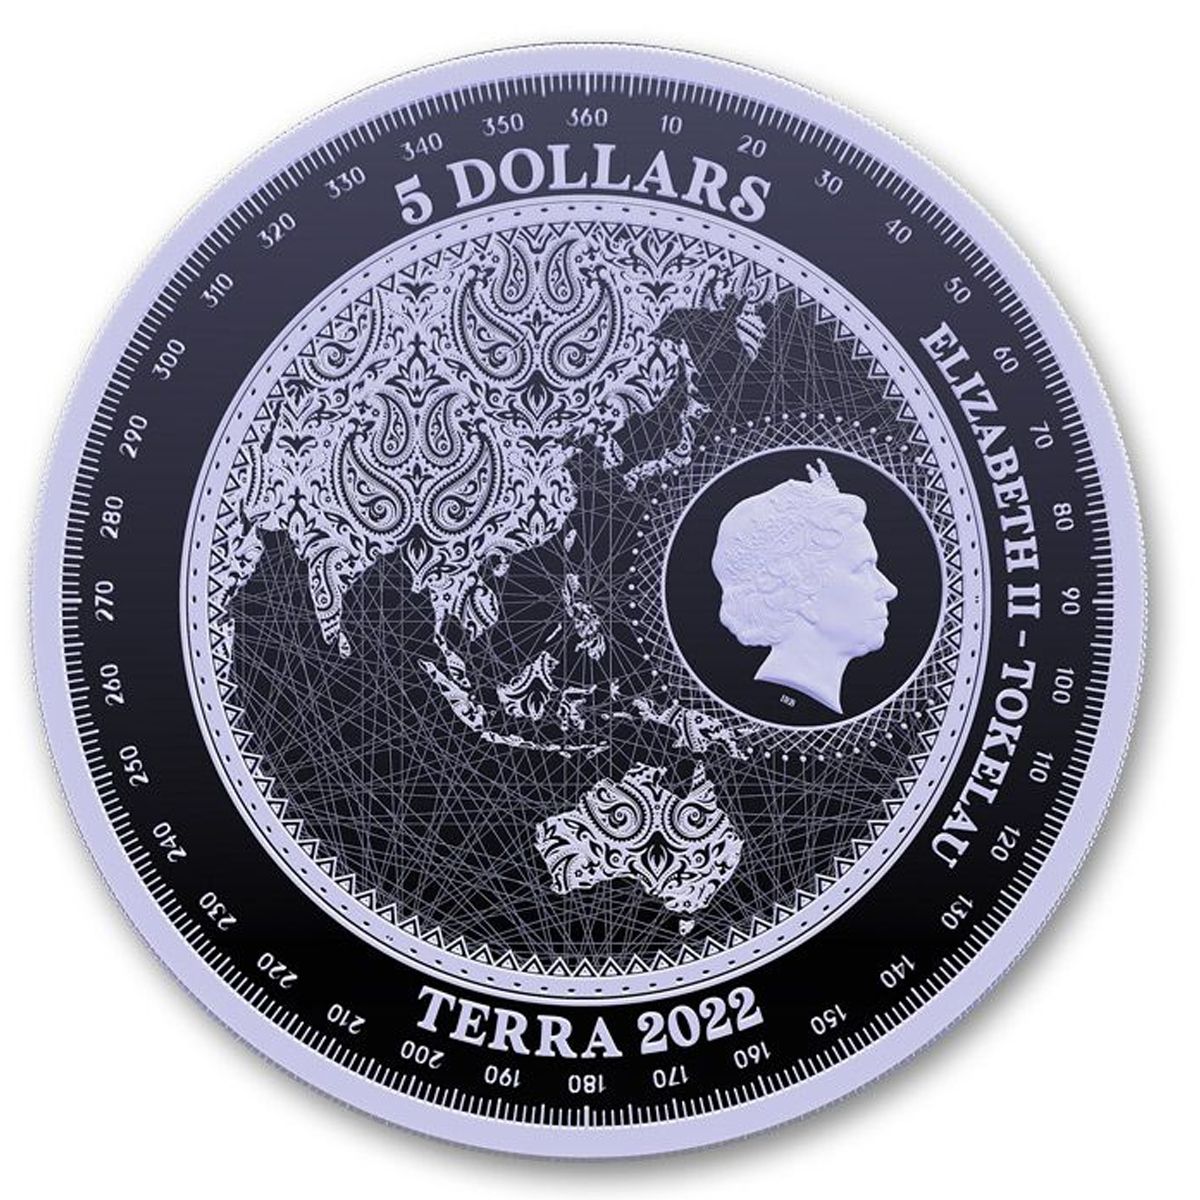 1 oz Silver Coin - Terra 2022